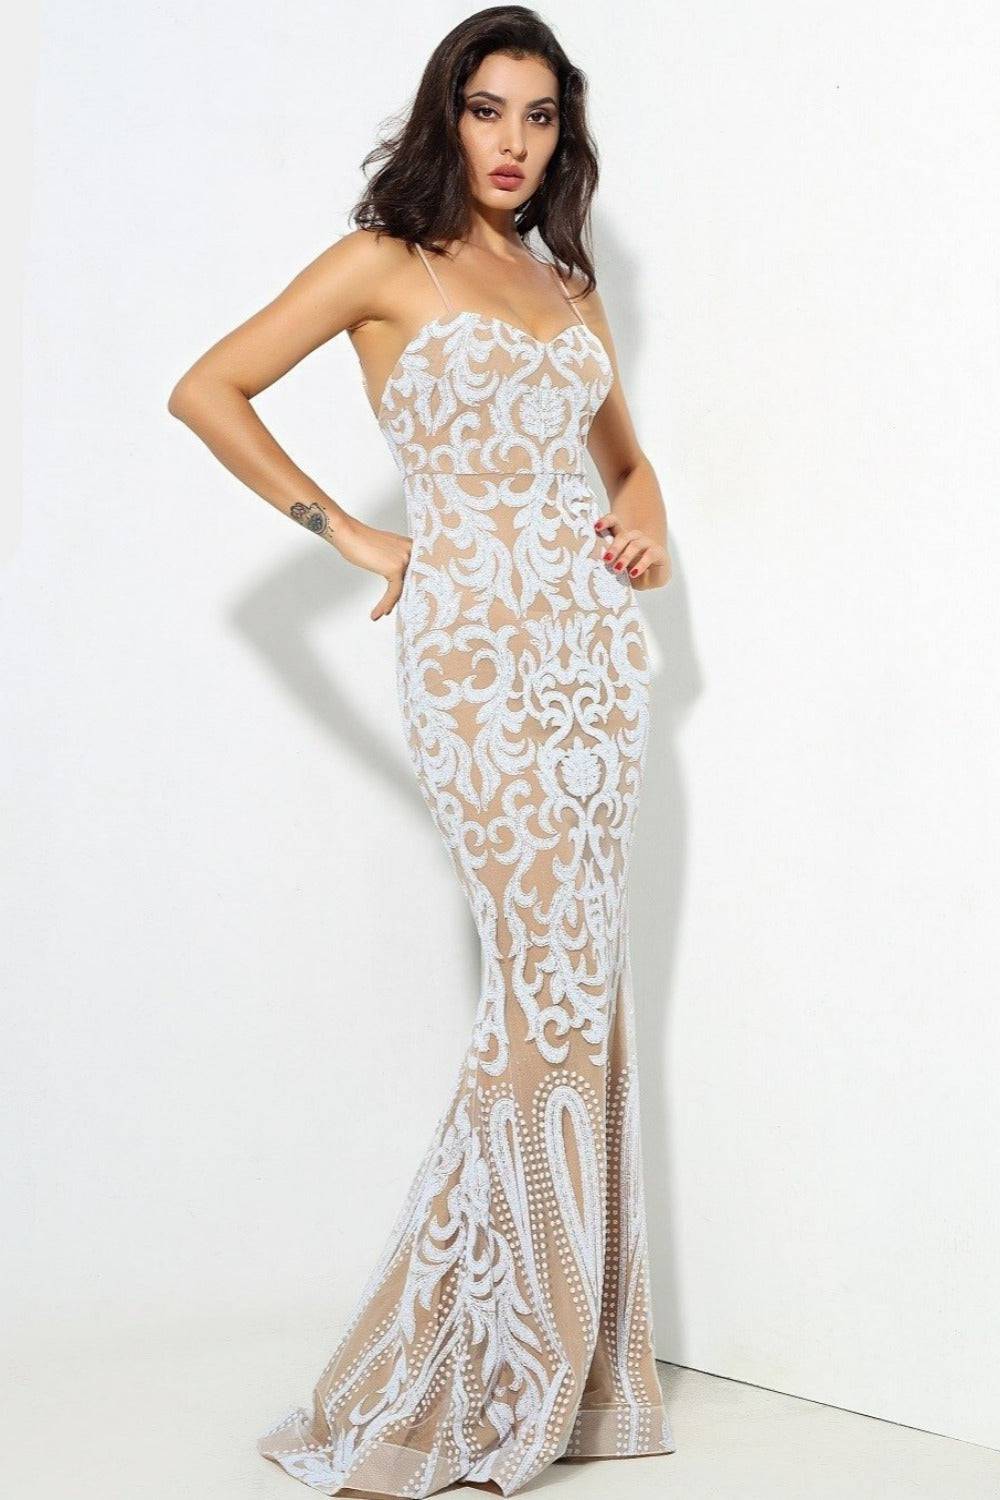 Sophia White Bodycon Maxi Dress - TGC Boutique - White Wedding Dress